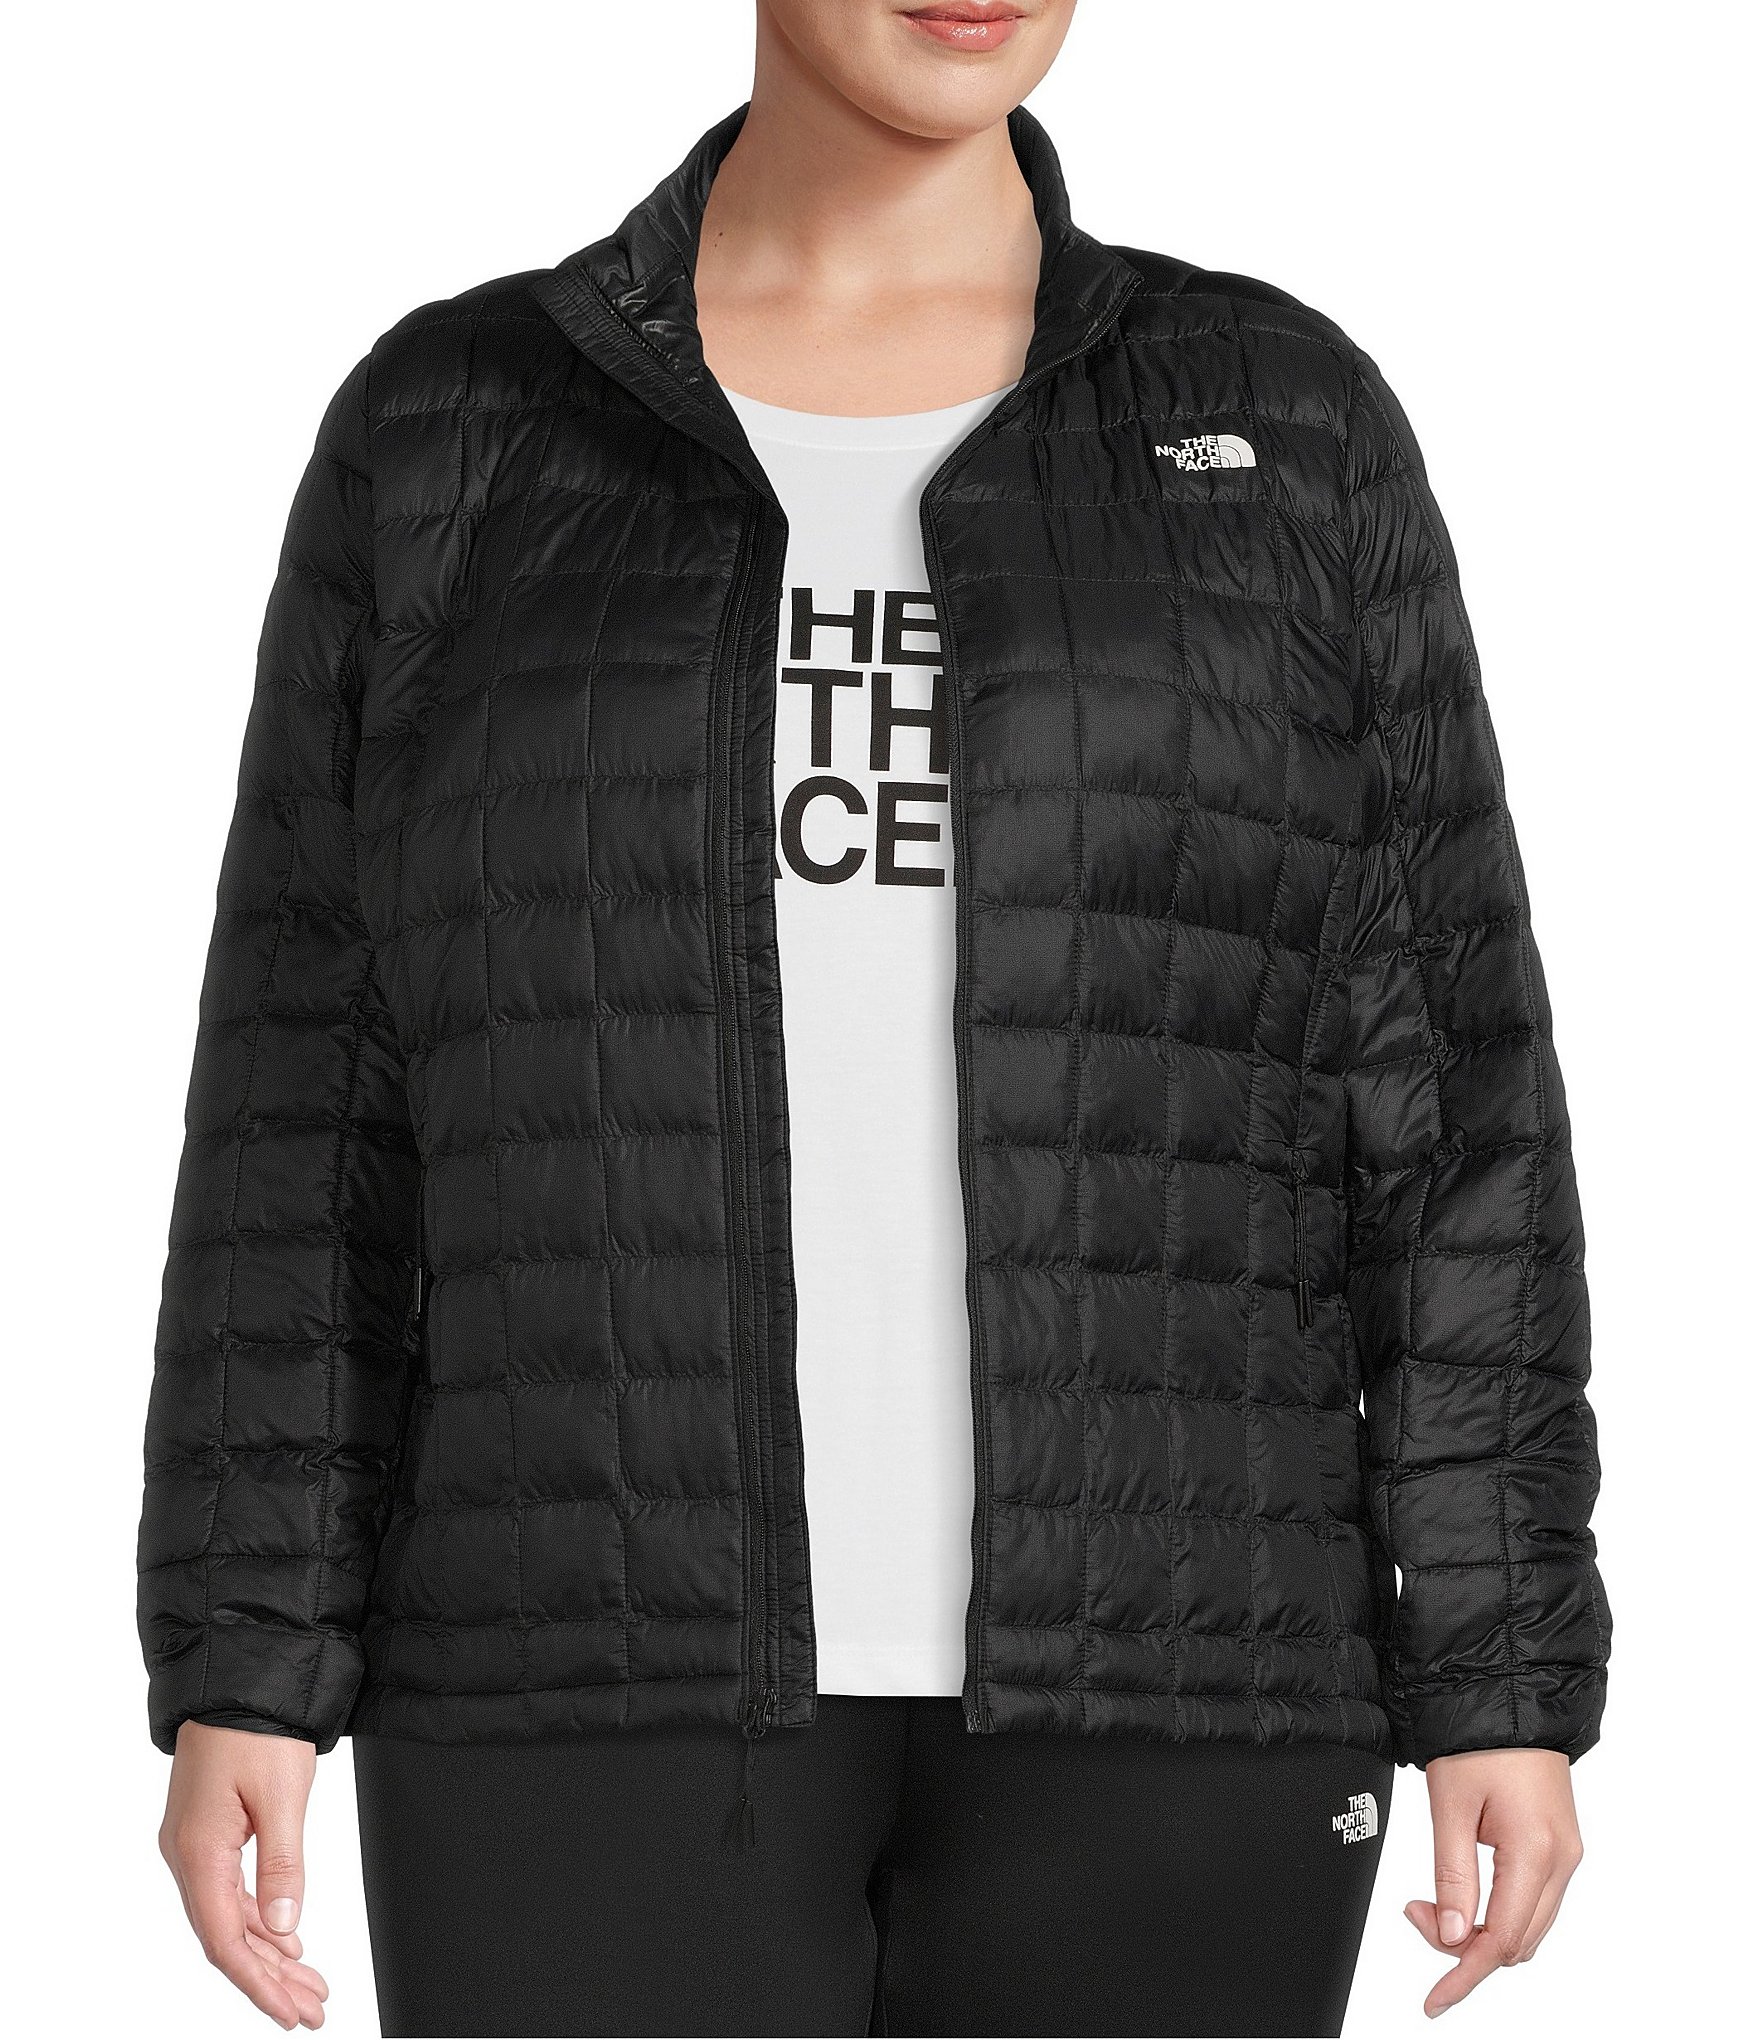 ZERDOCEAN Womens Plus Size Full Zip-Up Hoodie Jacket Cotton Sweatshirt